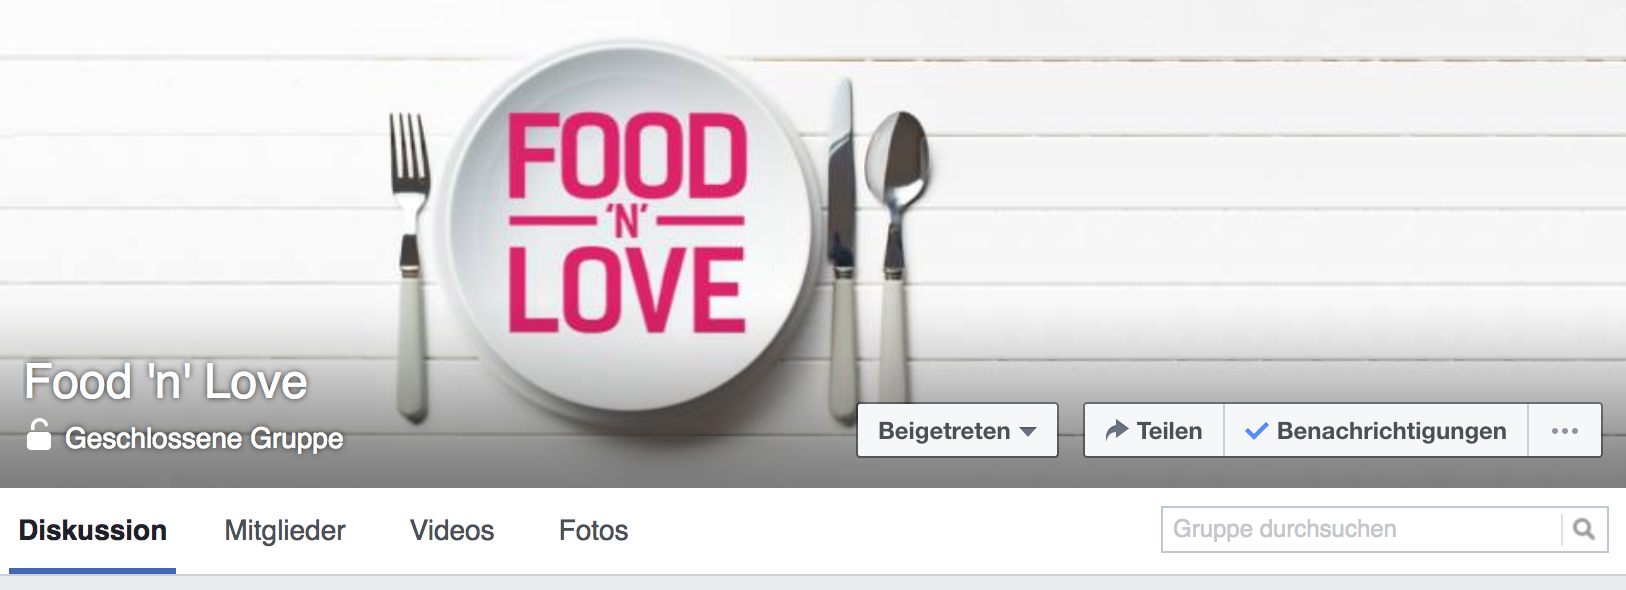 Facebook Gruppe Food ‘n’ Love